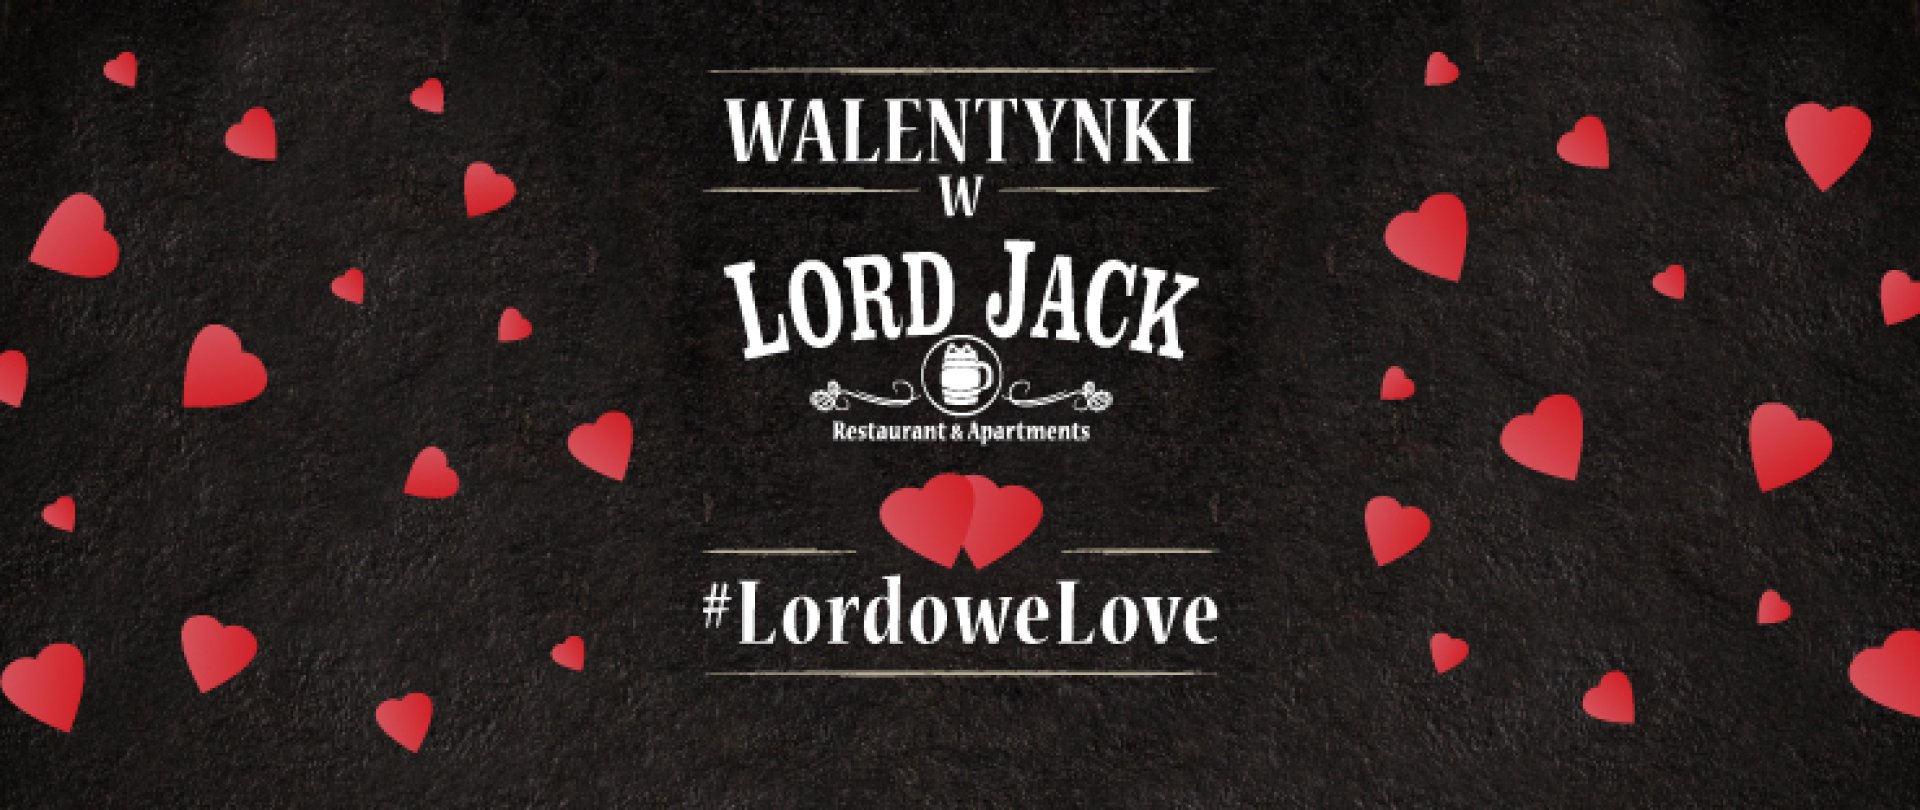 Walentynki w Lord Jack